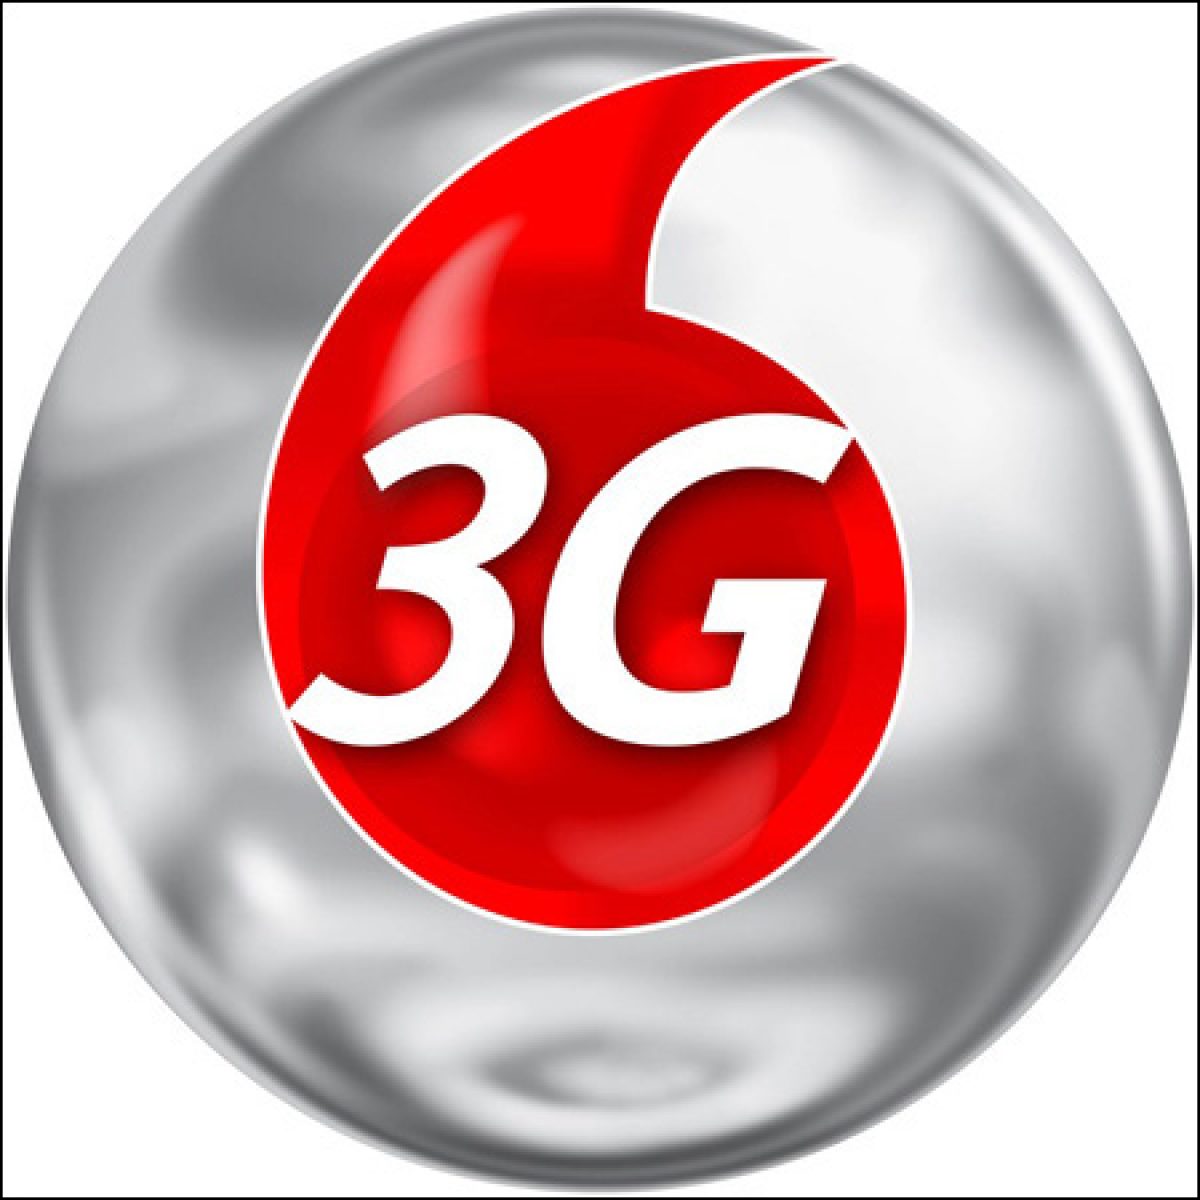 Les 2 blocs restants de la licence 3G mis à prix à 120 millions d’euros